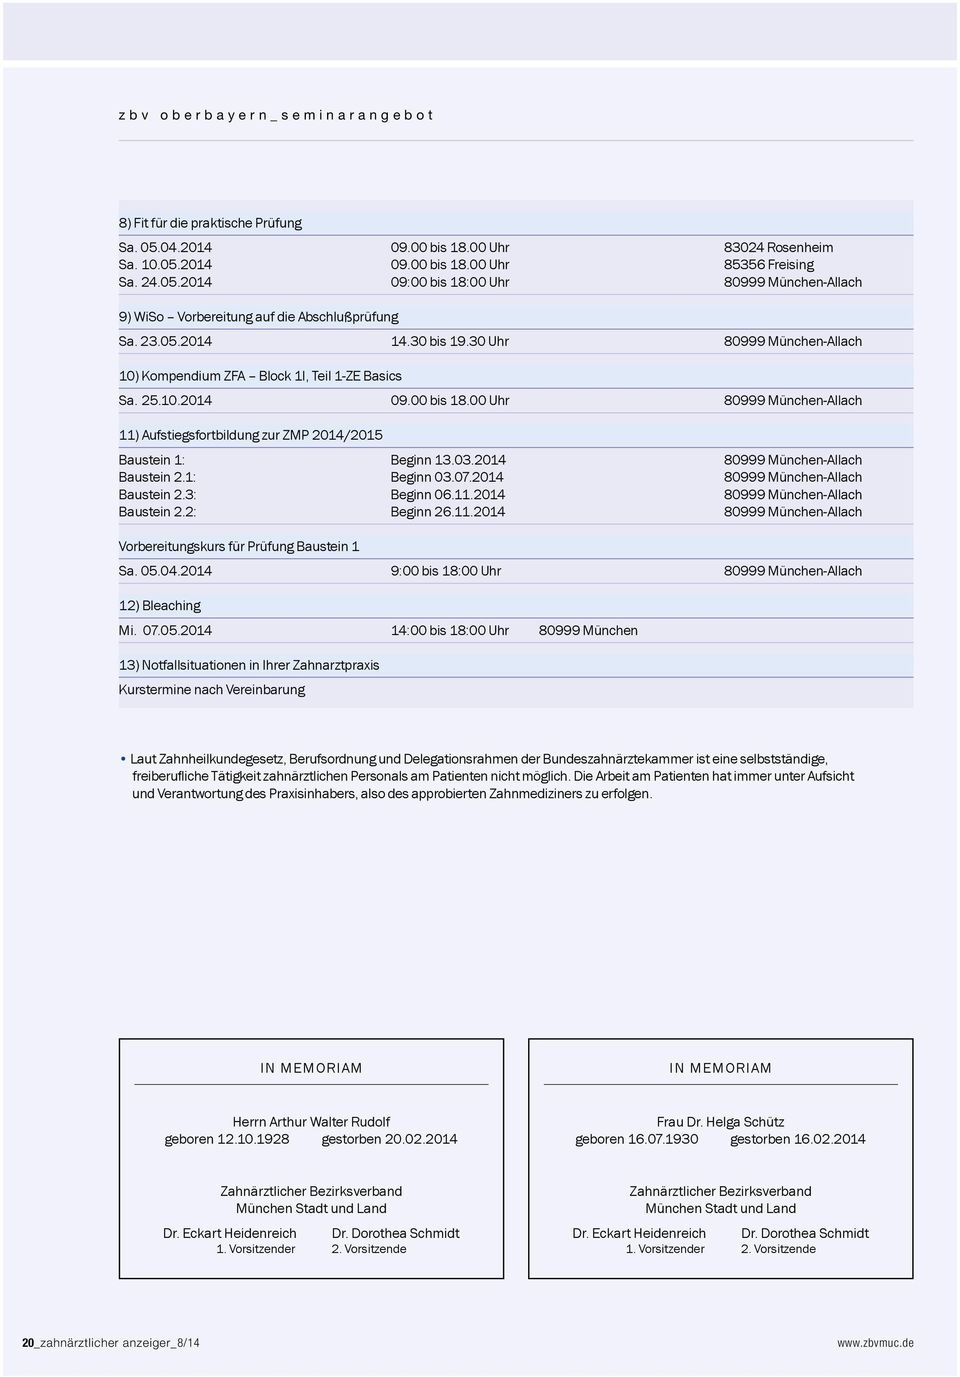 00 Uhr 80999 München-Allach 11) Aufstiegsfortbildung zur ZMP 2014/2015 Baustein 1: Beginn 13.03.2014 80999 München-Allach Baustein 2.1: Beginn 03.07.2014 80999 München-Allach Baustein 2.3: Beginn 06.